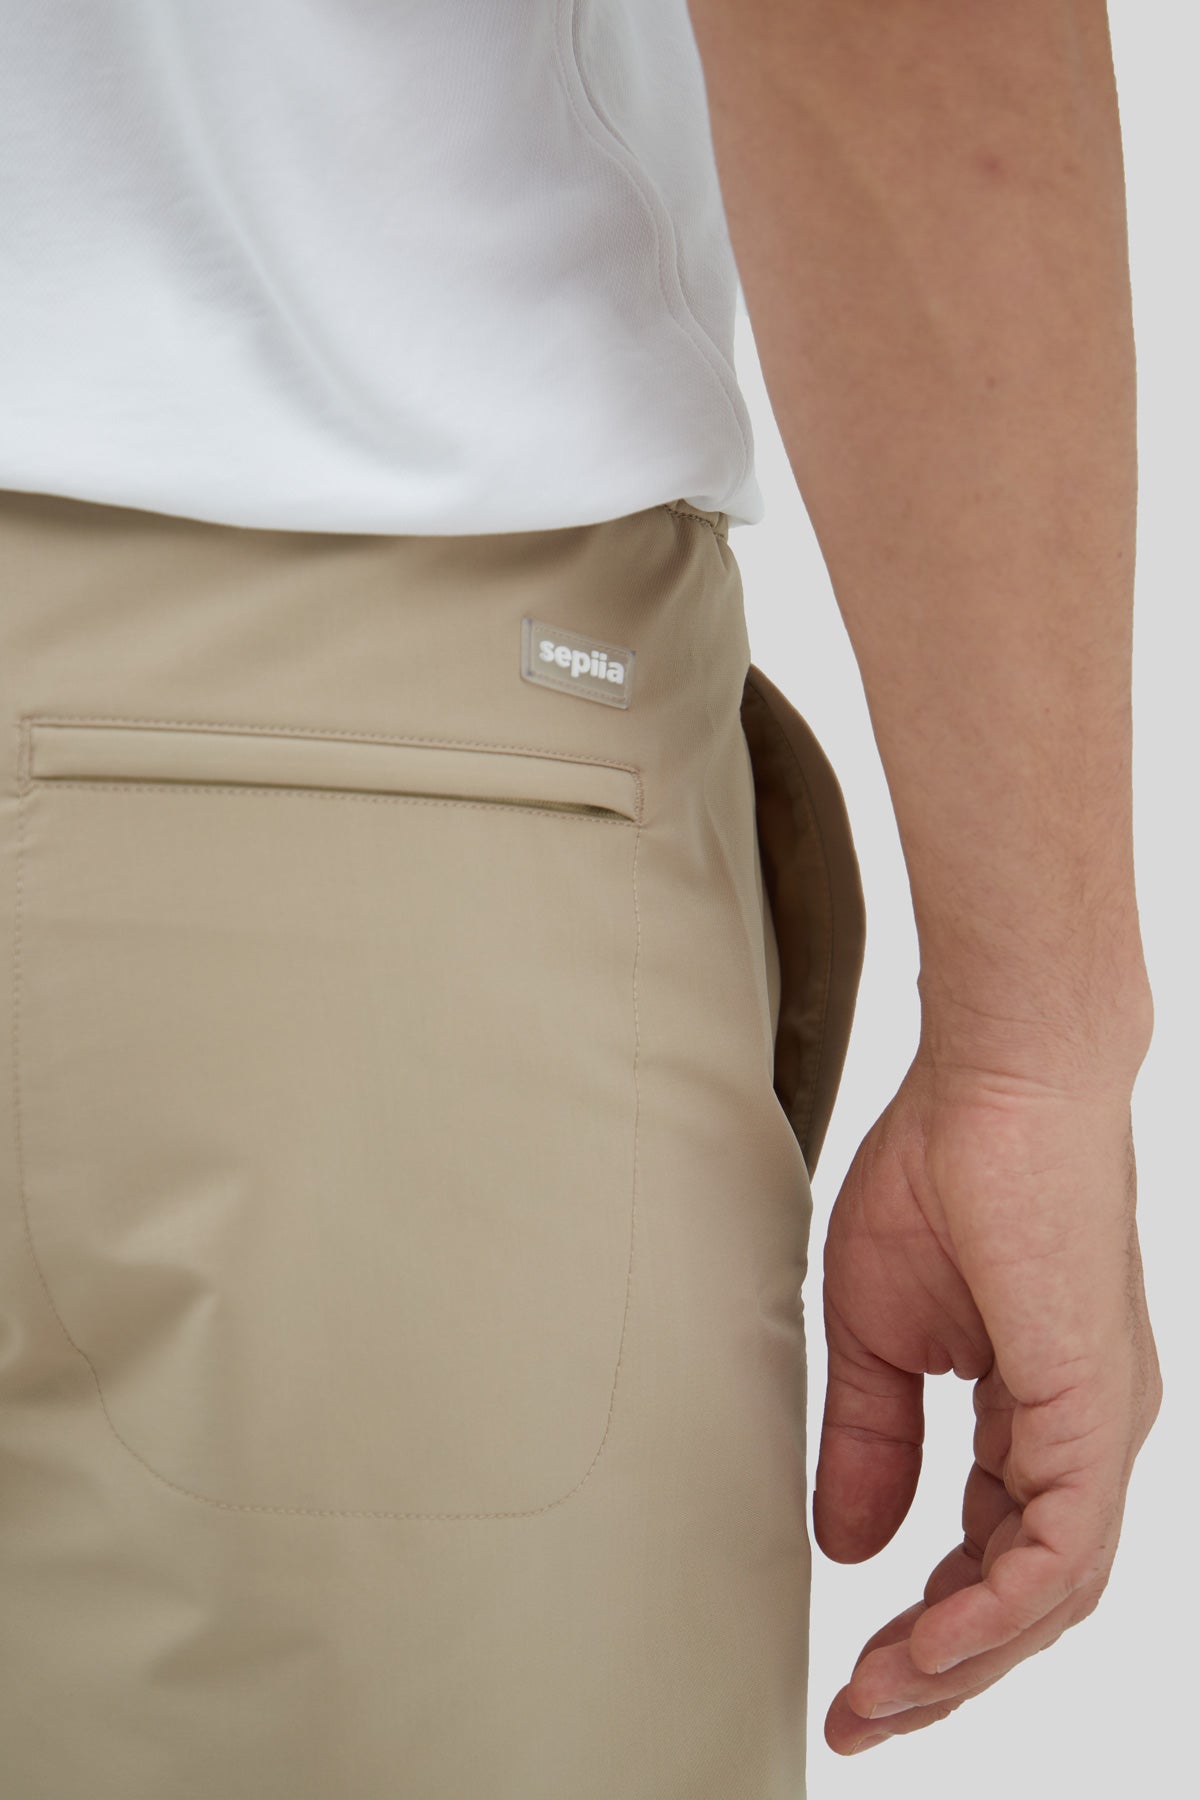 Beige shorts | Enrique Alex